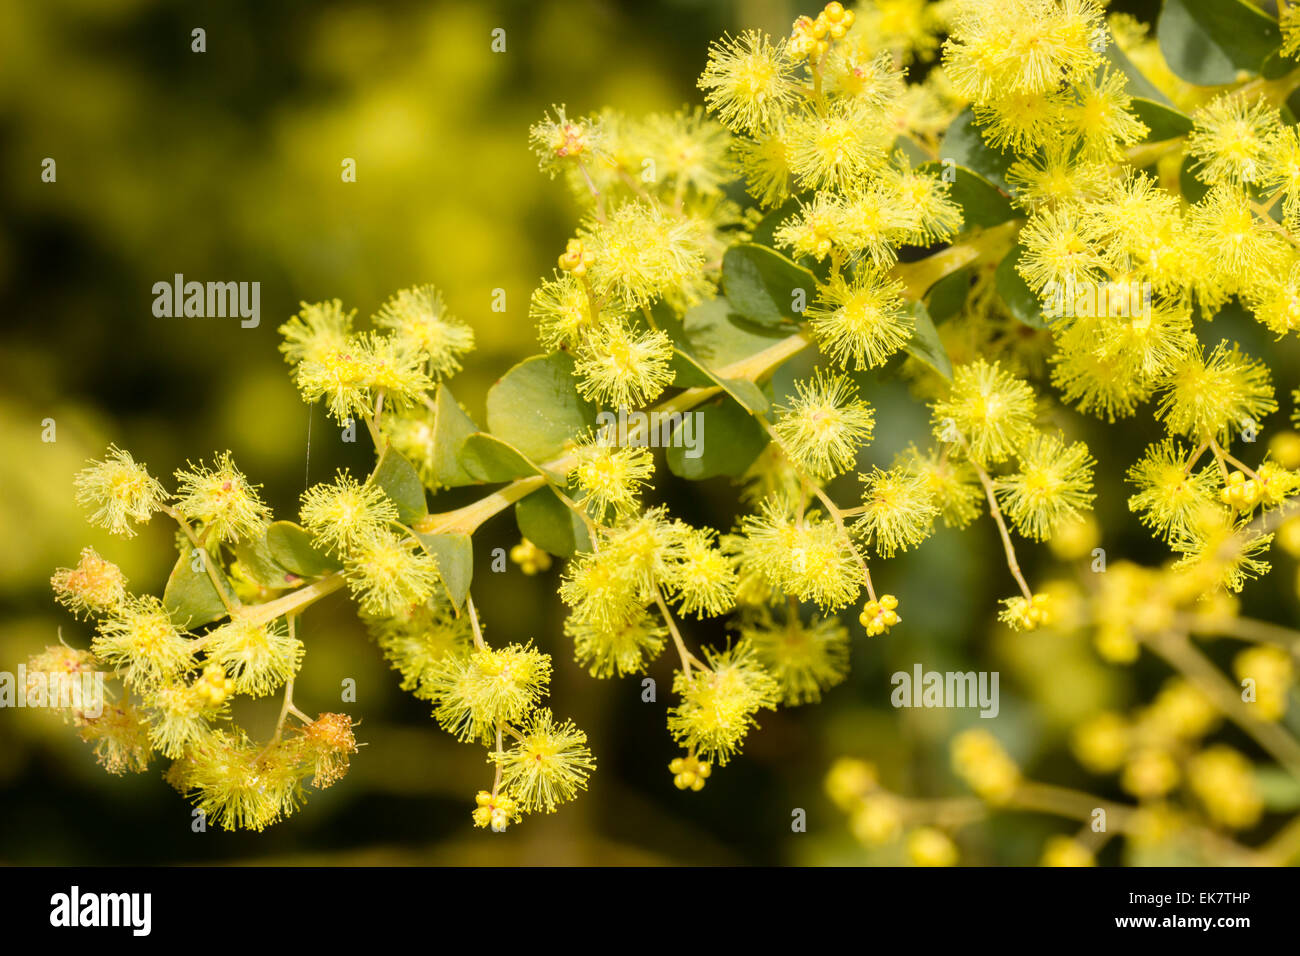 Yellow puffball flowers of Oven's wattle, Acacia pravissima Stock Photo